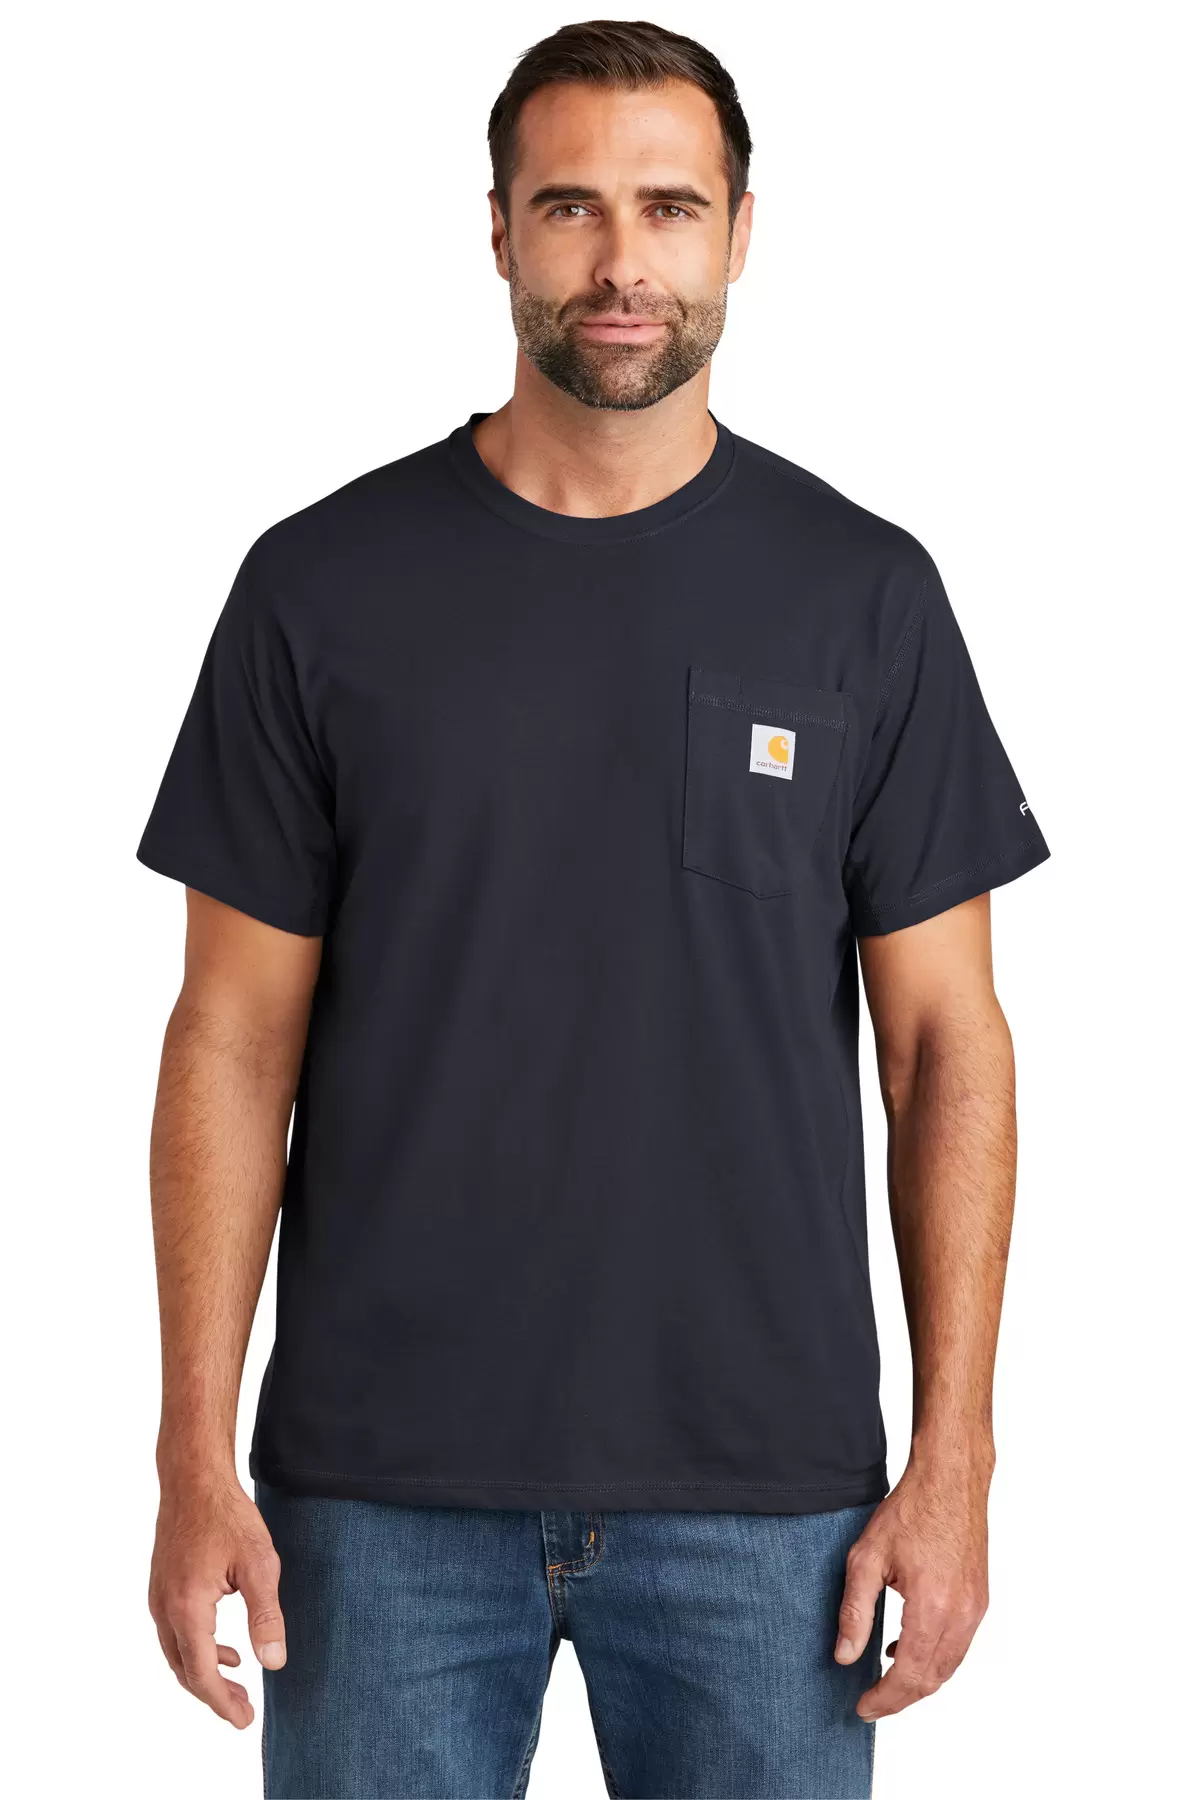 CARHARTT CT104616 Carhartt Force Short Sleeve Pocket T-Shirt